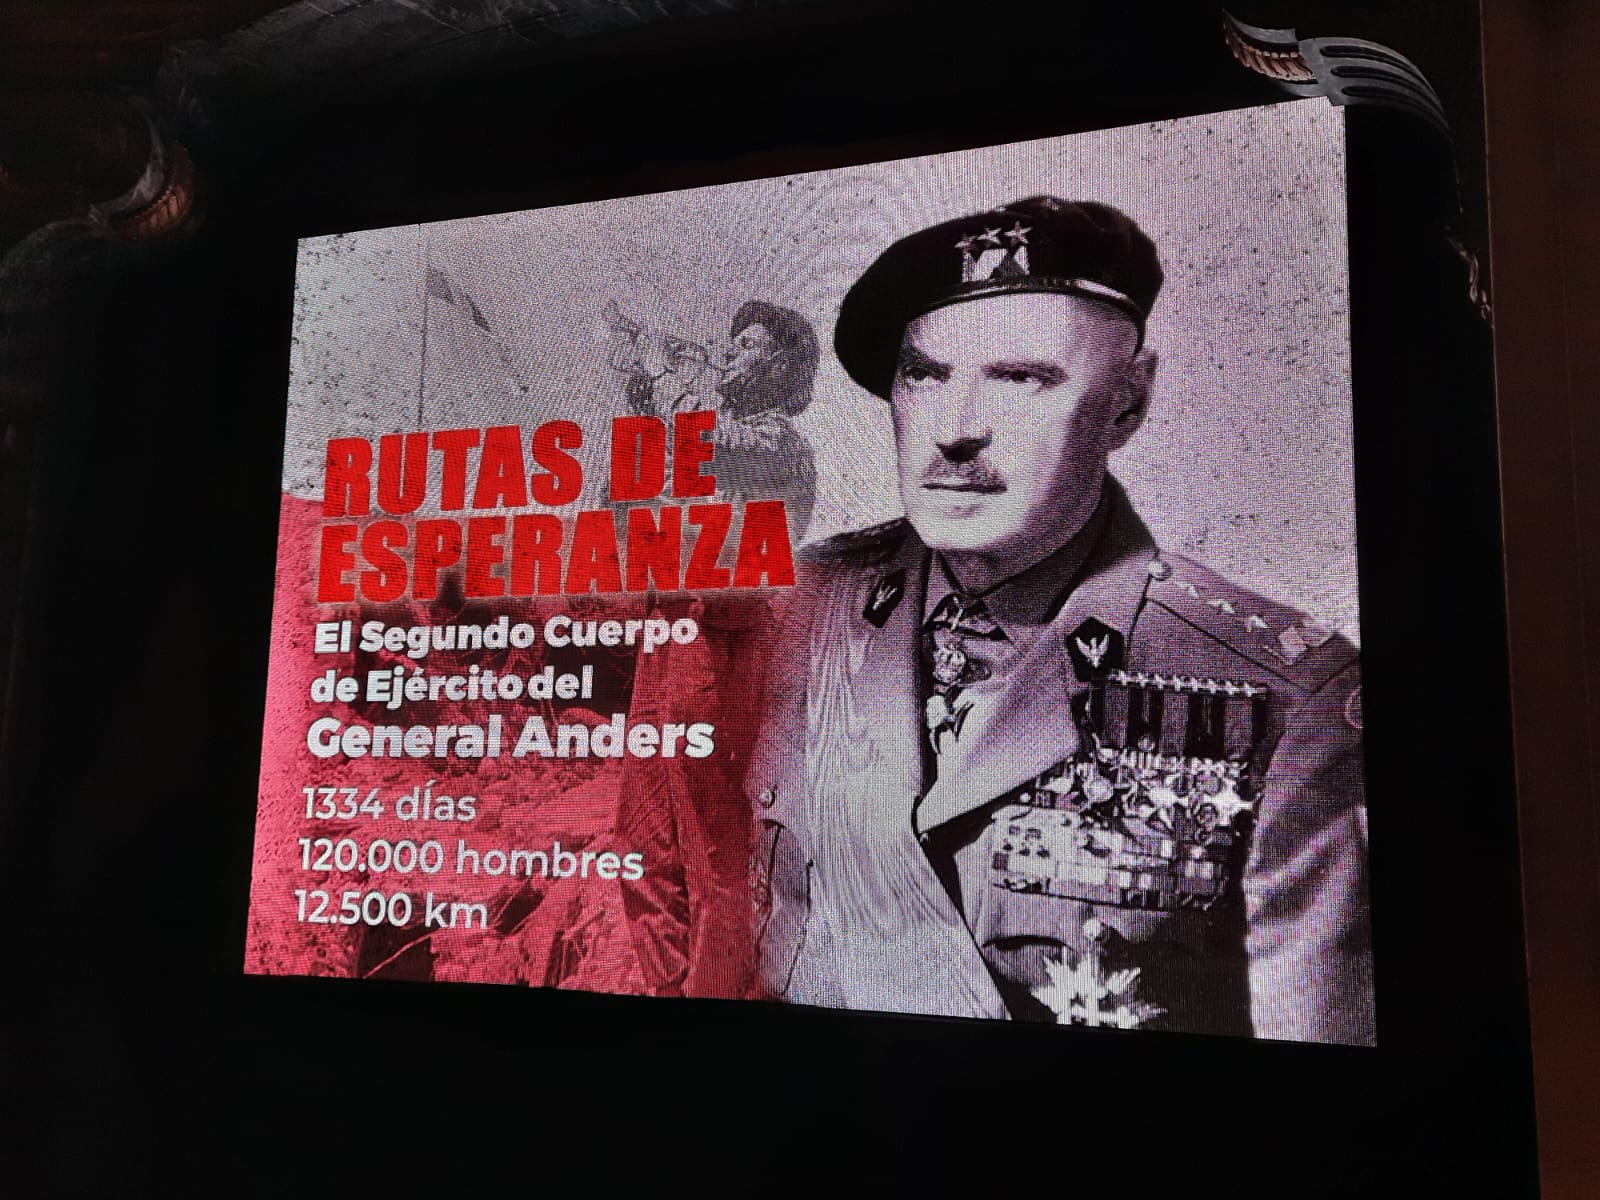 Exposición sobre el 2° Cuerpo del Ejército Polaco